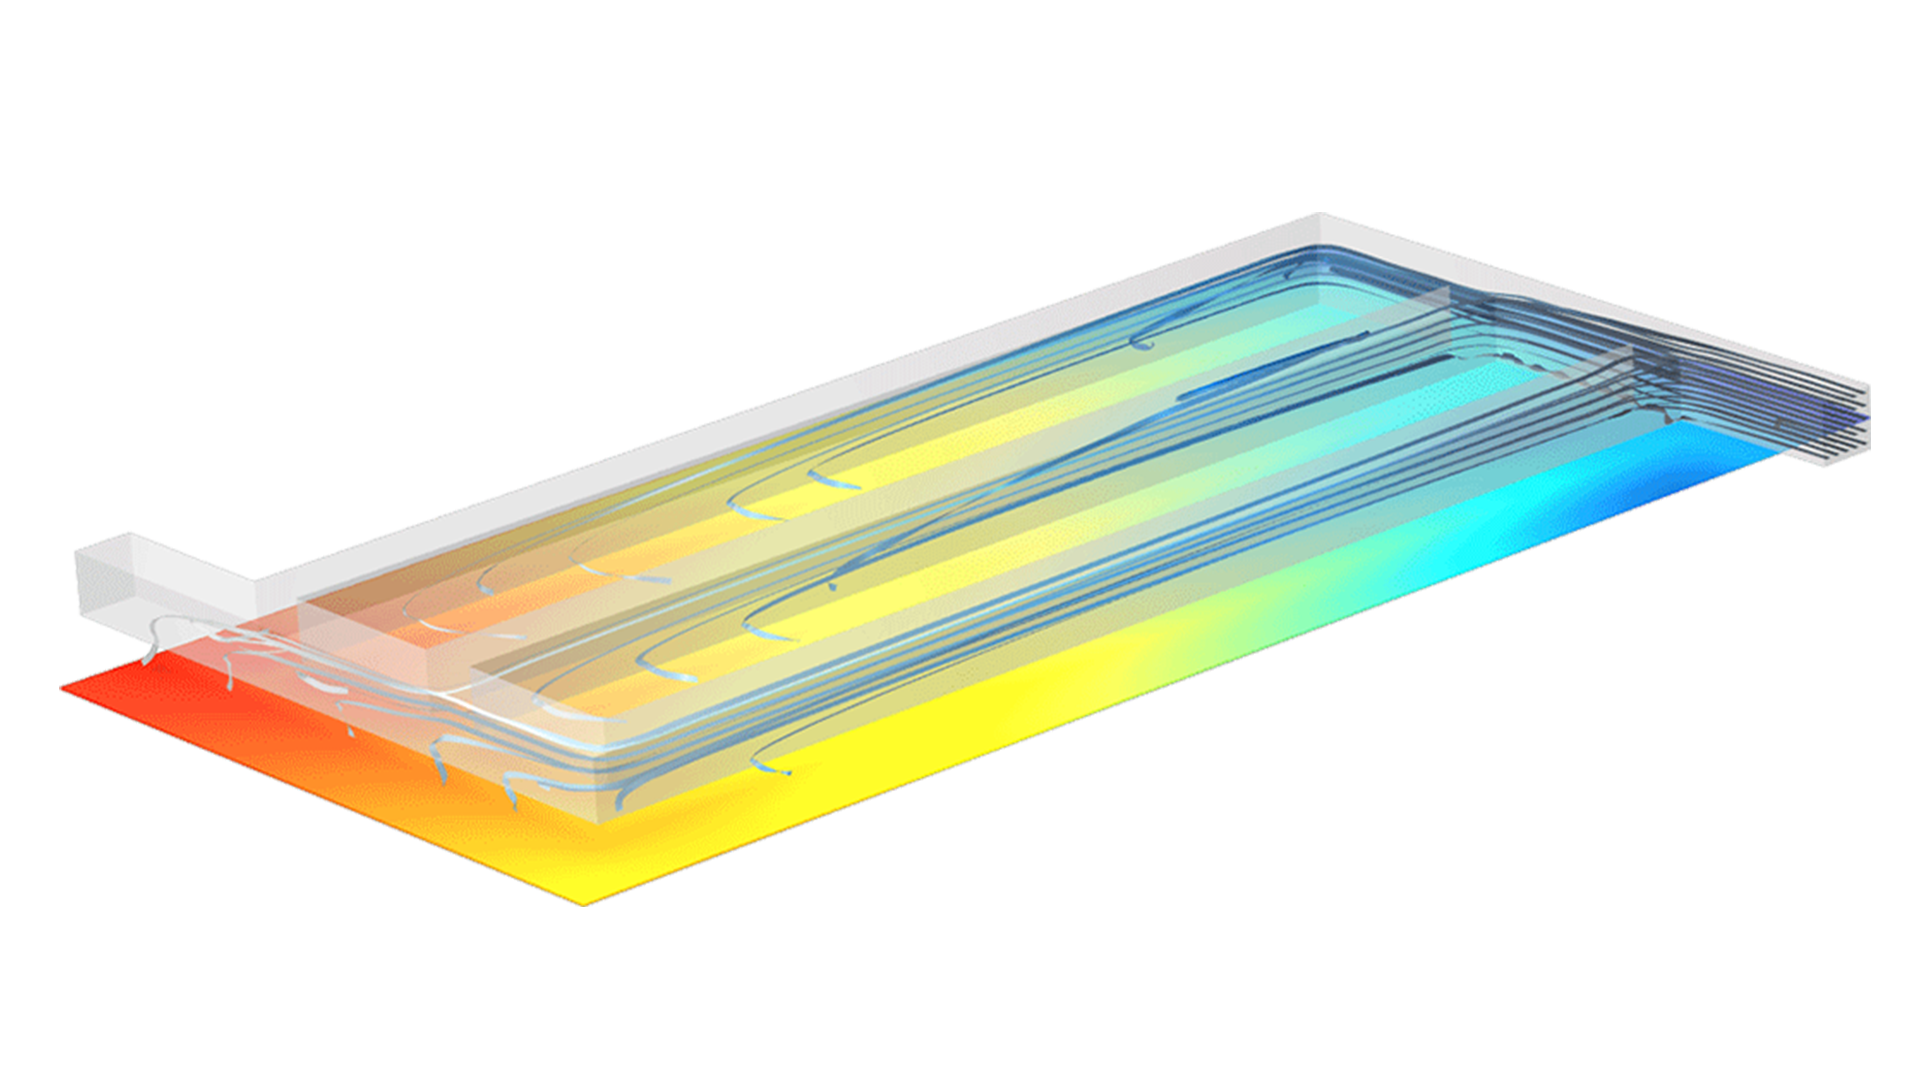 電流密度分布を示すために, いくつかのチャネルを流れる流線とその下のレインボー平面を備えた電解質分離器モデル.